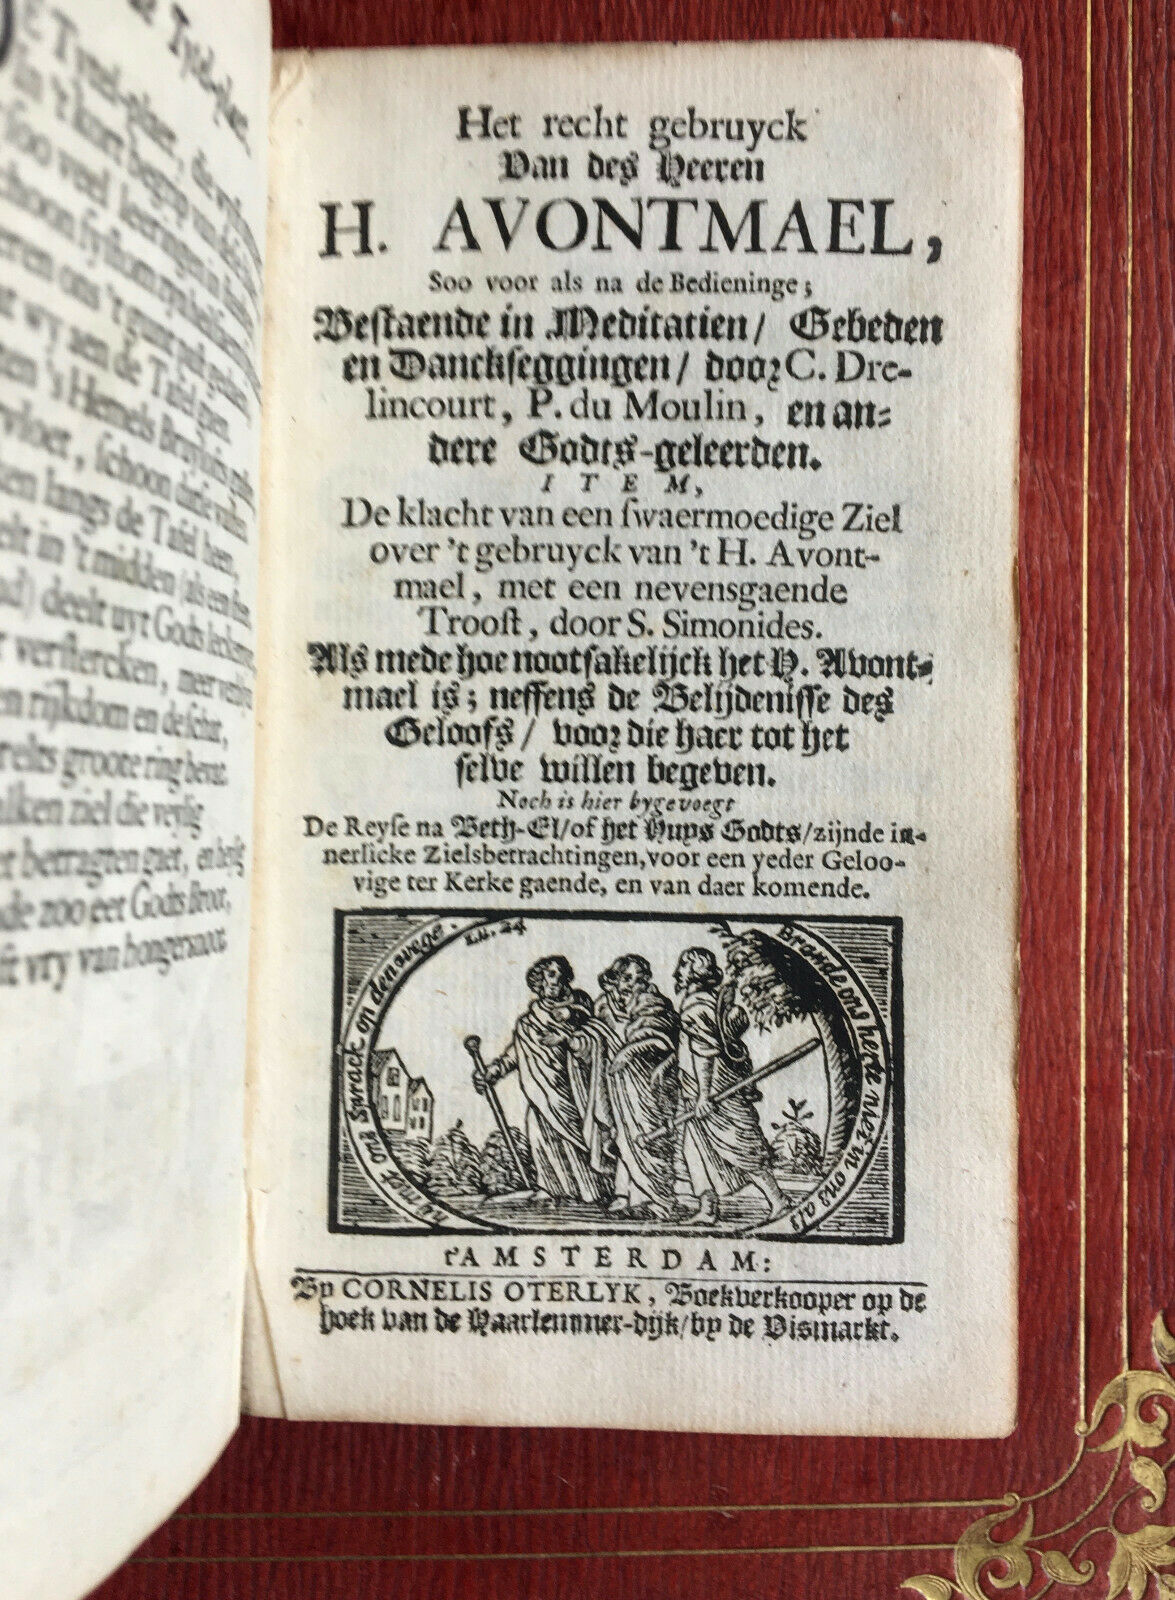 C. Drelincourt -— Het Recht Gebruyck Van H. Avontmael — Calvin — Oterlyk — 1725.